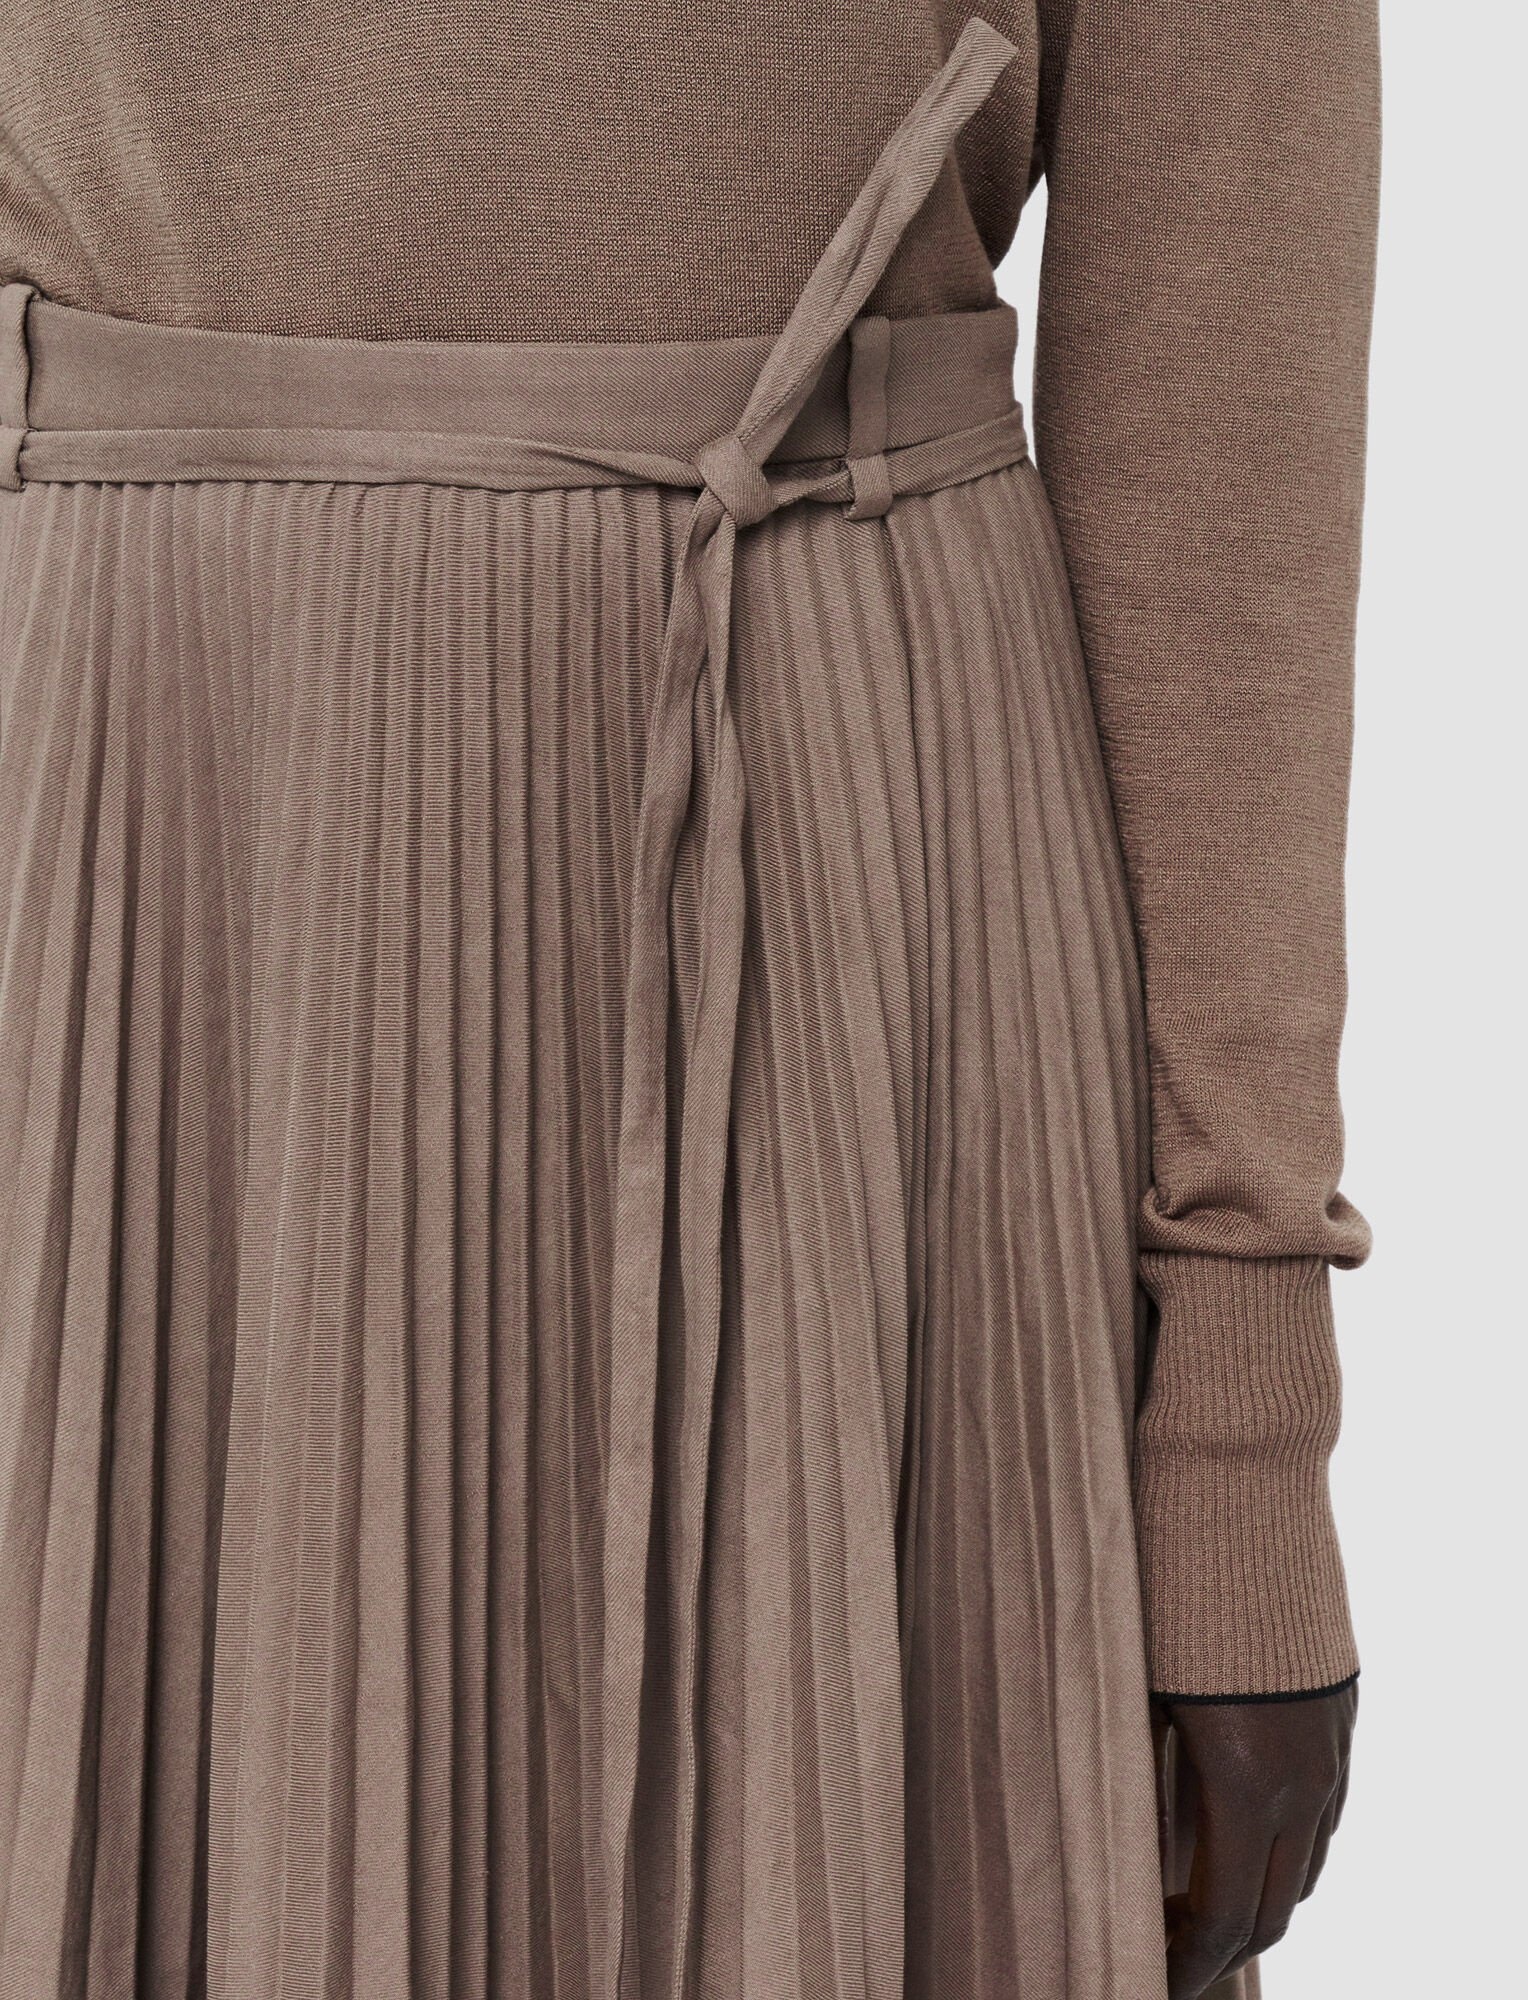 Linen Cotton Siddons Skirt - 4